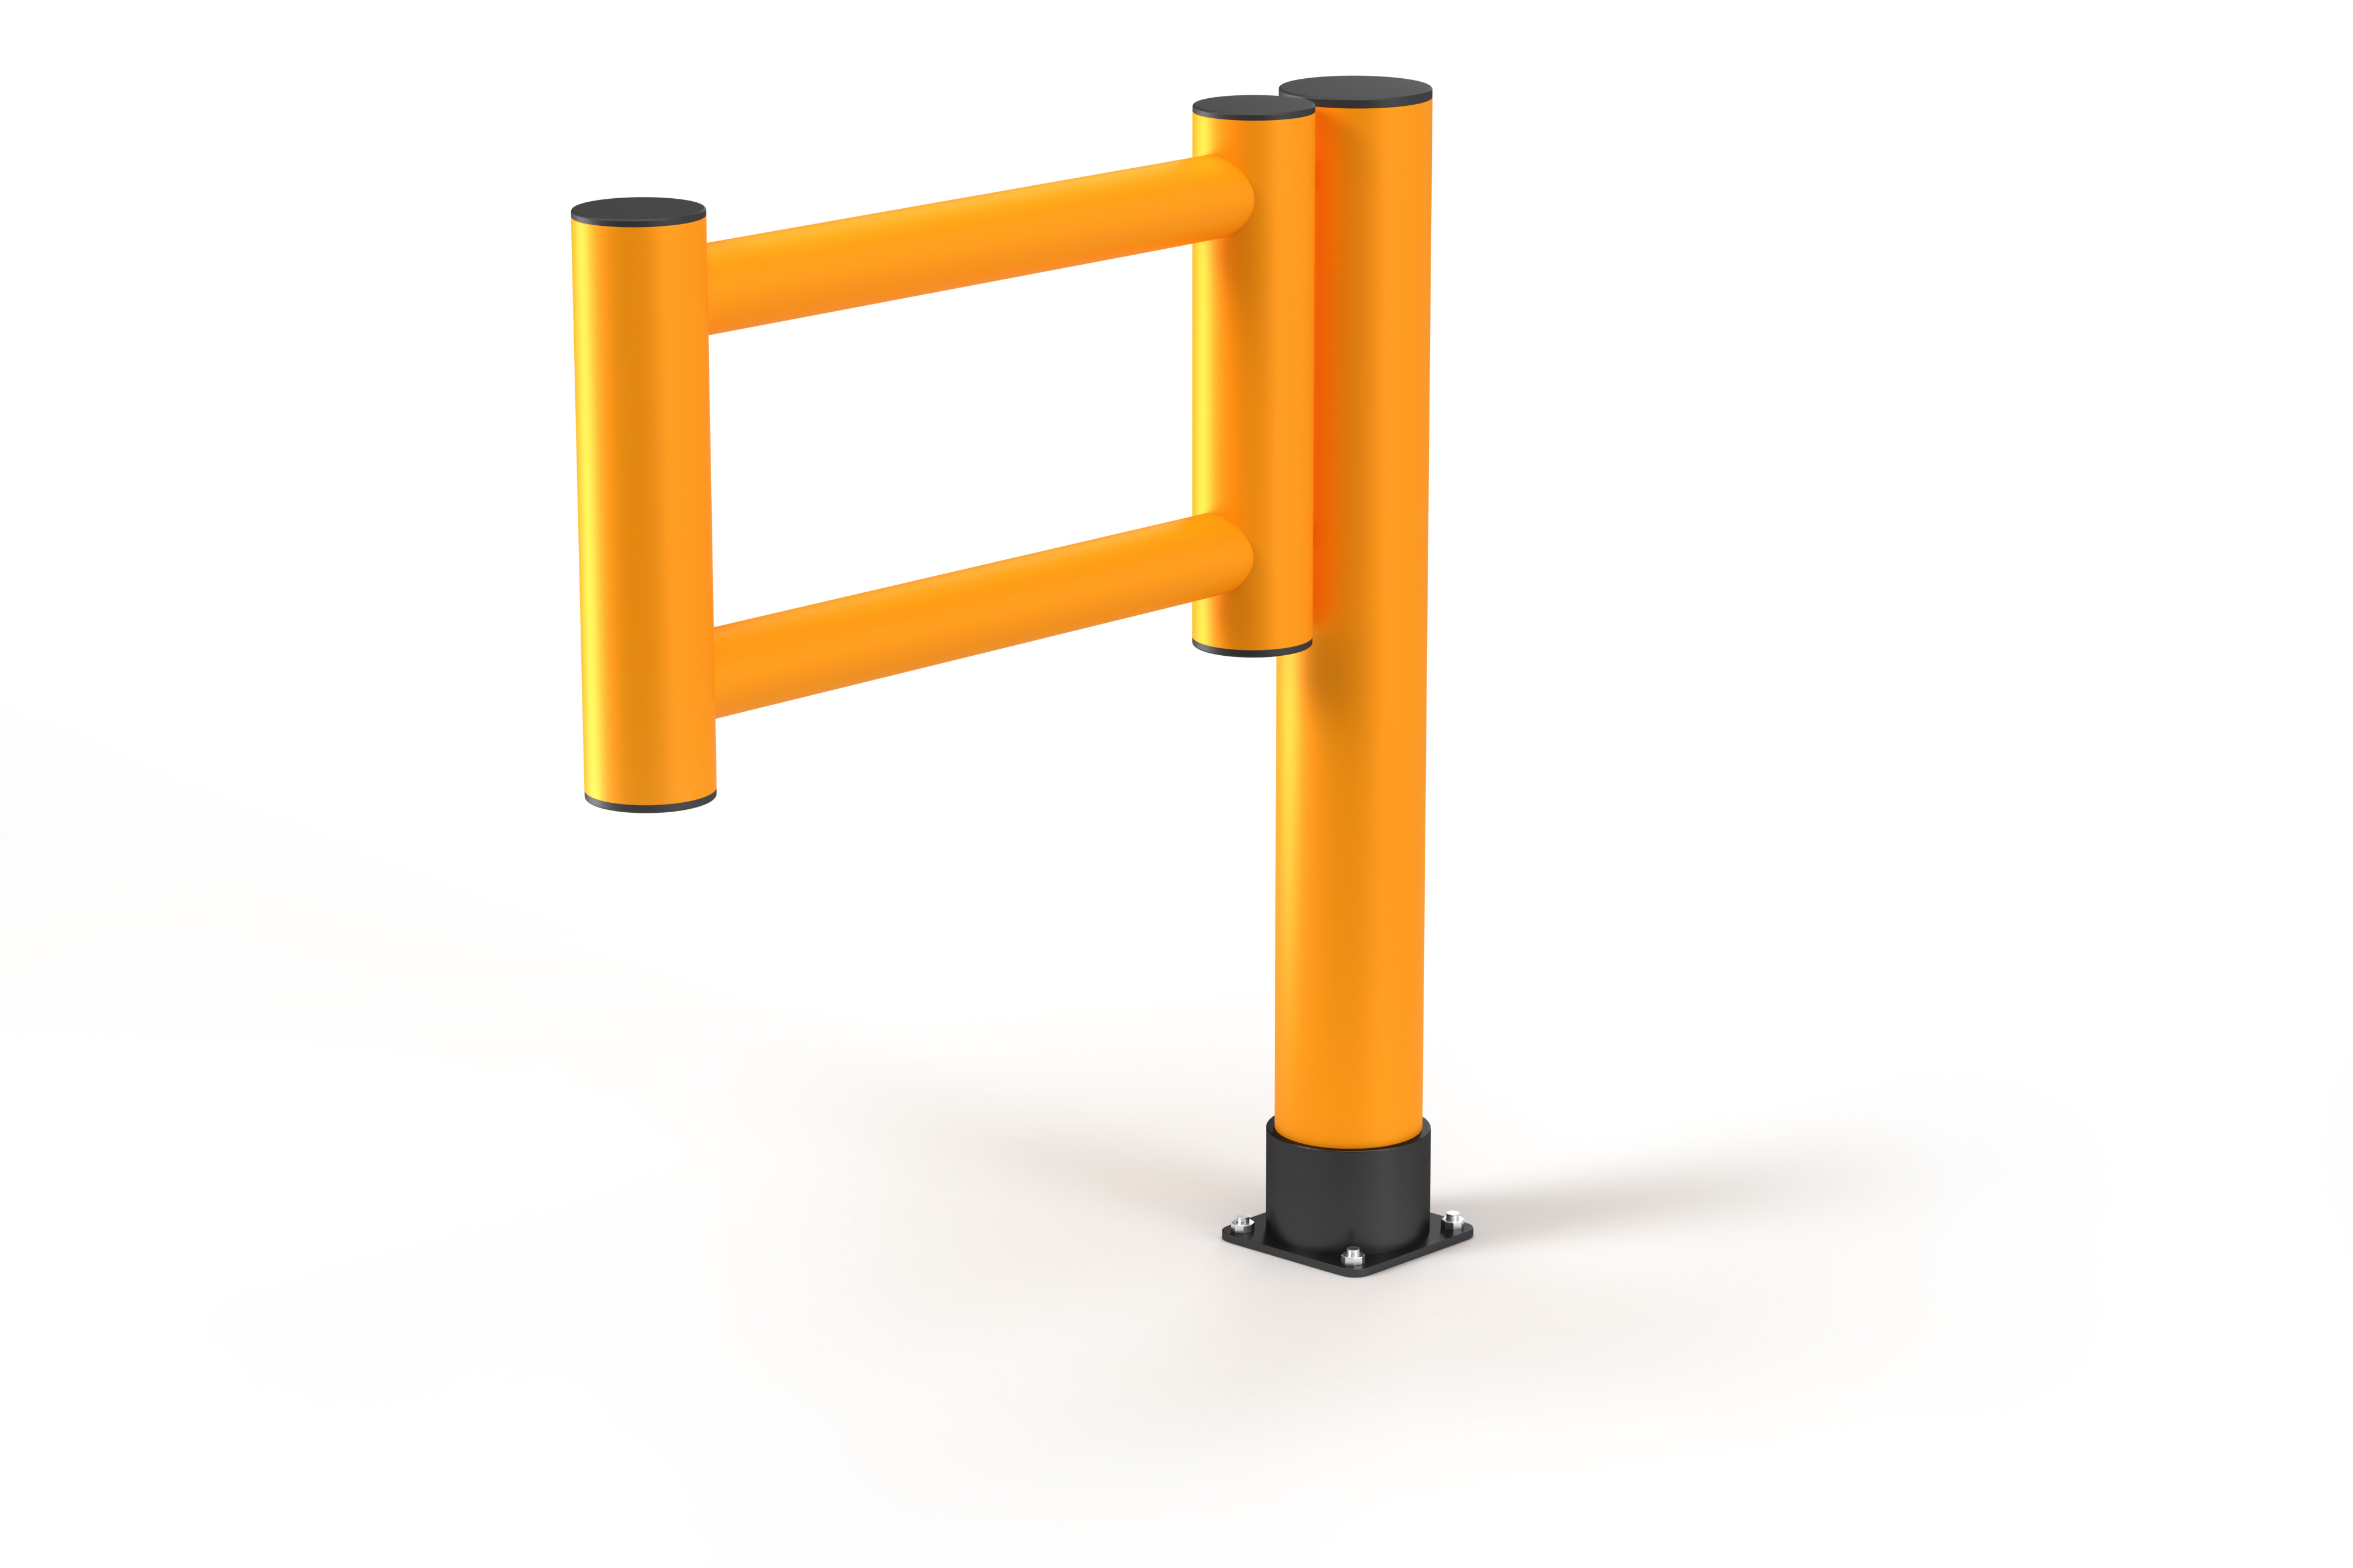 Swing Gate System für Zugangsstellen & Fußgängerübergänge | Anschlag rechts | ø 14cm, HxBxT 110x100x22cm | HDPE Polyethylen, UV- & Wetterbeständig | Inkl. Montagematerial